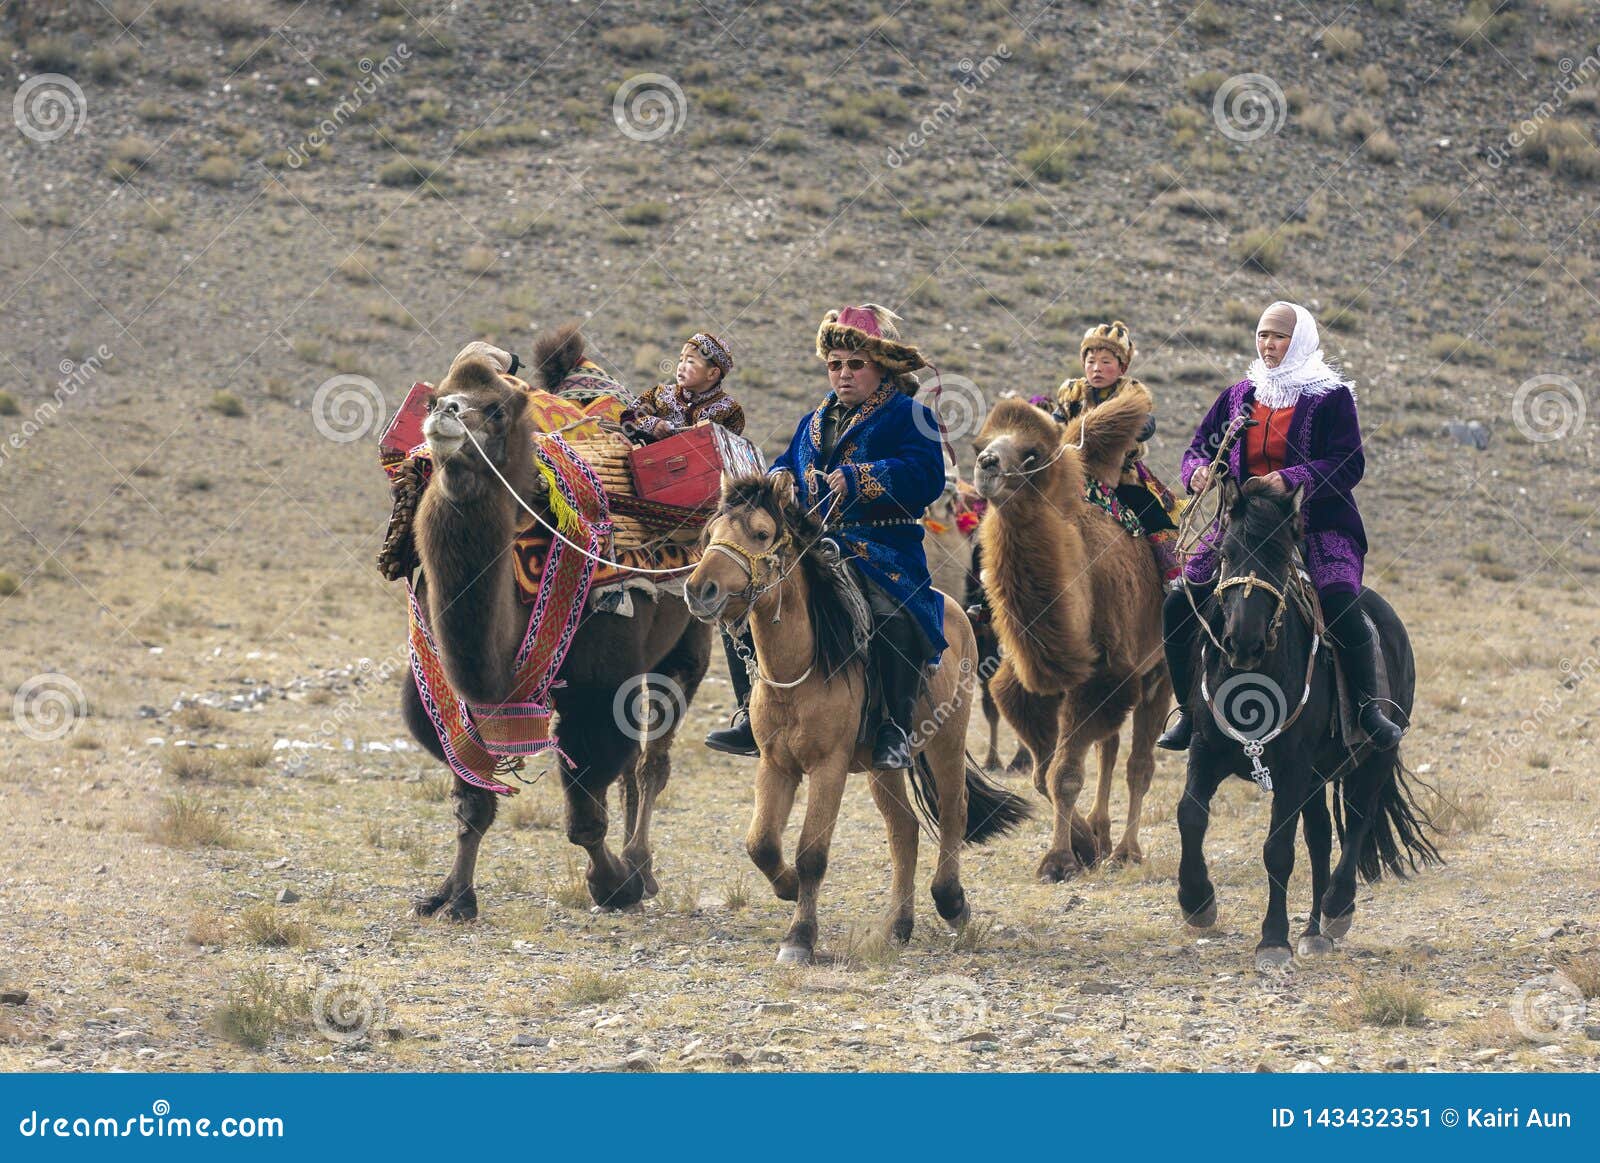 蒙品1选带你看蒙古族马背文化——雕花的马鞍！ - 知乎